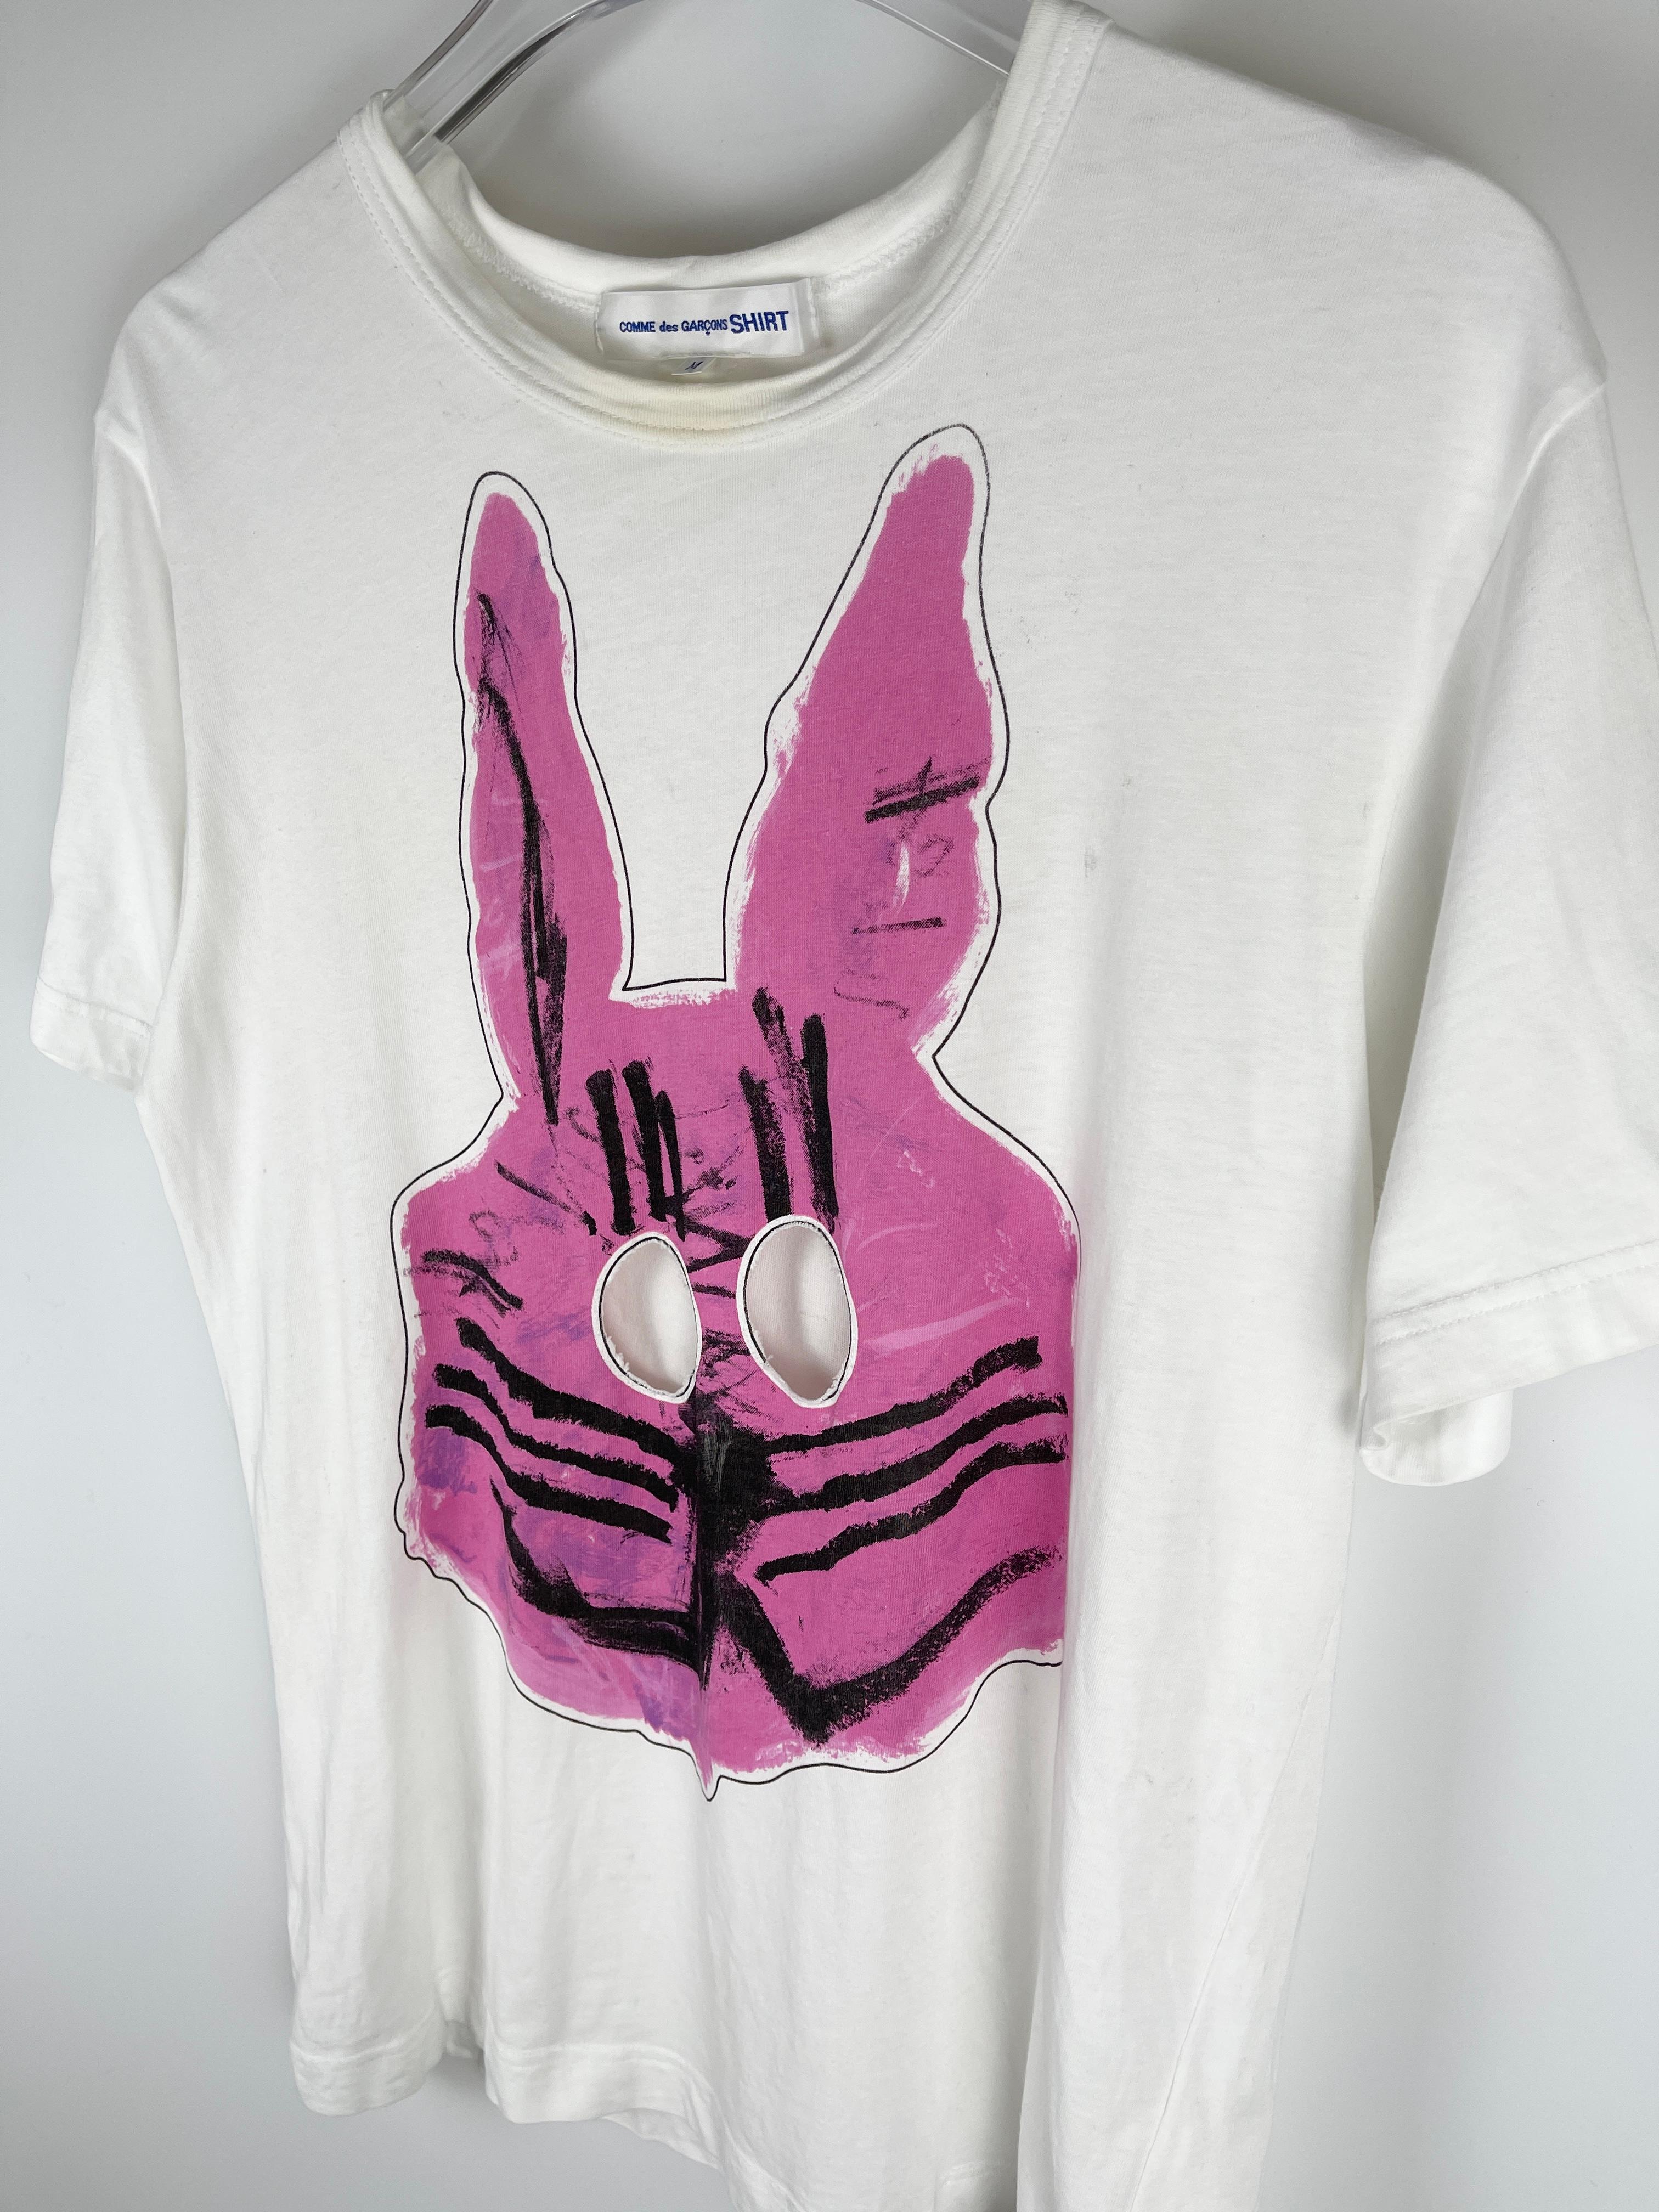 Comme Des Garcons SHIRT S/S2019 Cut-Out Rabbit T-Shirt For Sale 1